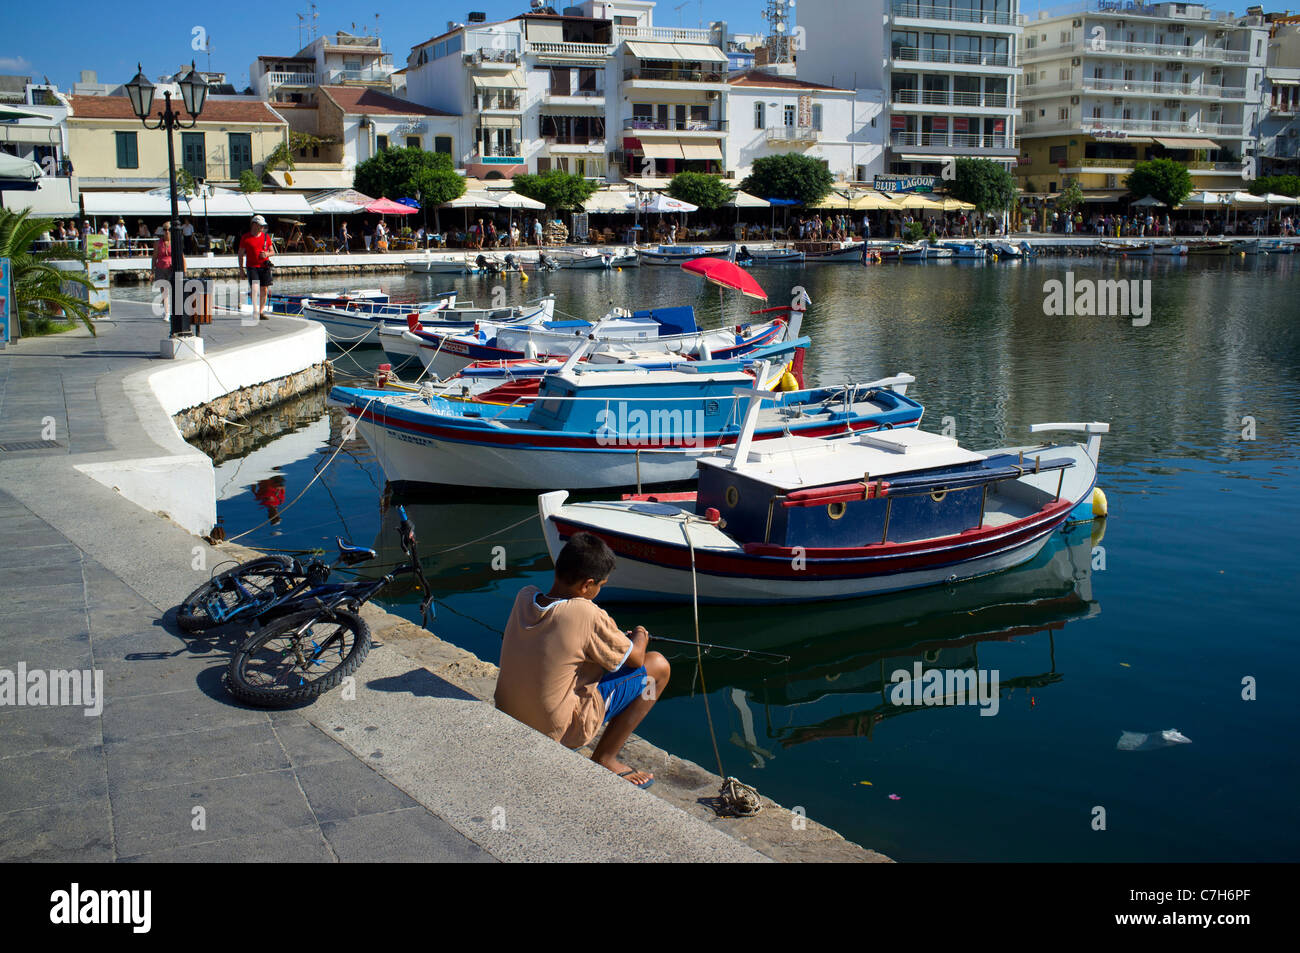 Boy bicicleta Pesca Lago Voulismeni Creta Grecia puerto Boat Harbor restaurantes vacaciones destino soleado de verano Sol bicicleta Foto de stock